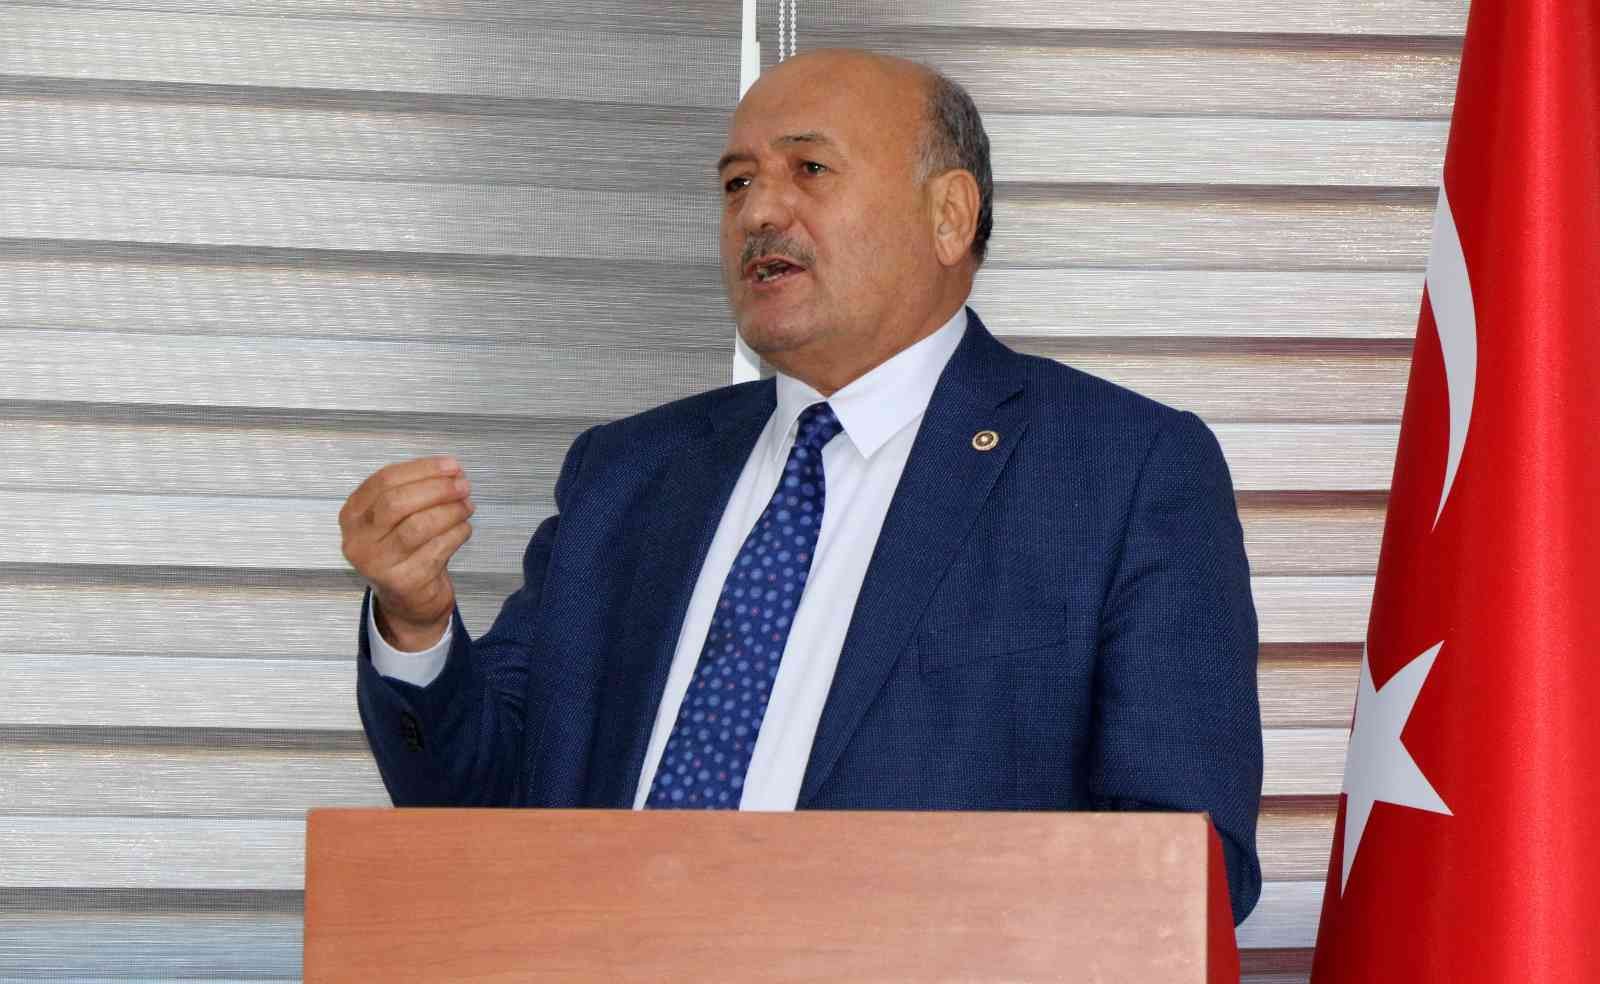 AK Parti Milletvekili Karaman: “Biz lider ülkeyiz. Siz bizi ekonomiyle, dolarla terbiye edemeyeceksiniz” #erzincan